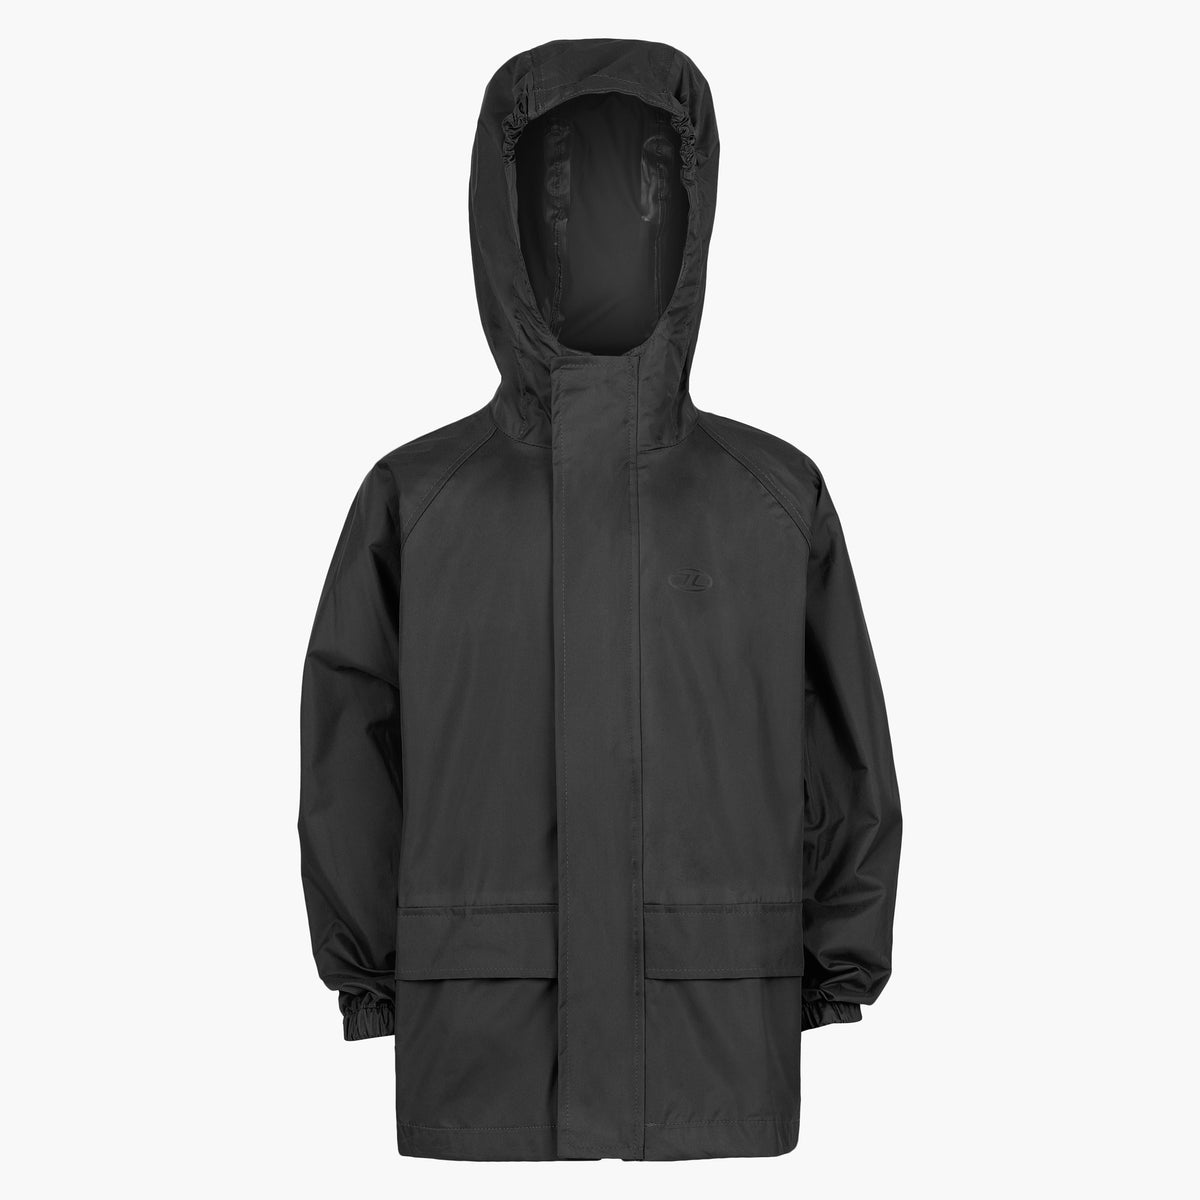 Stormguard Jacket, Mens, Black, L | Highlander Outdoor